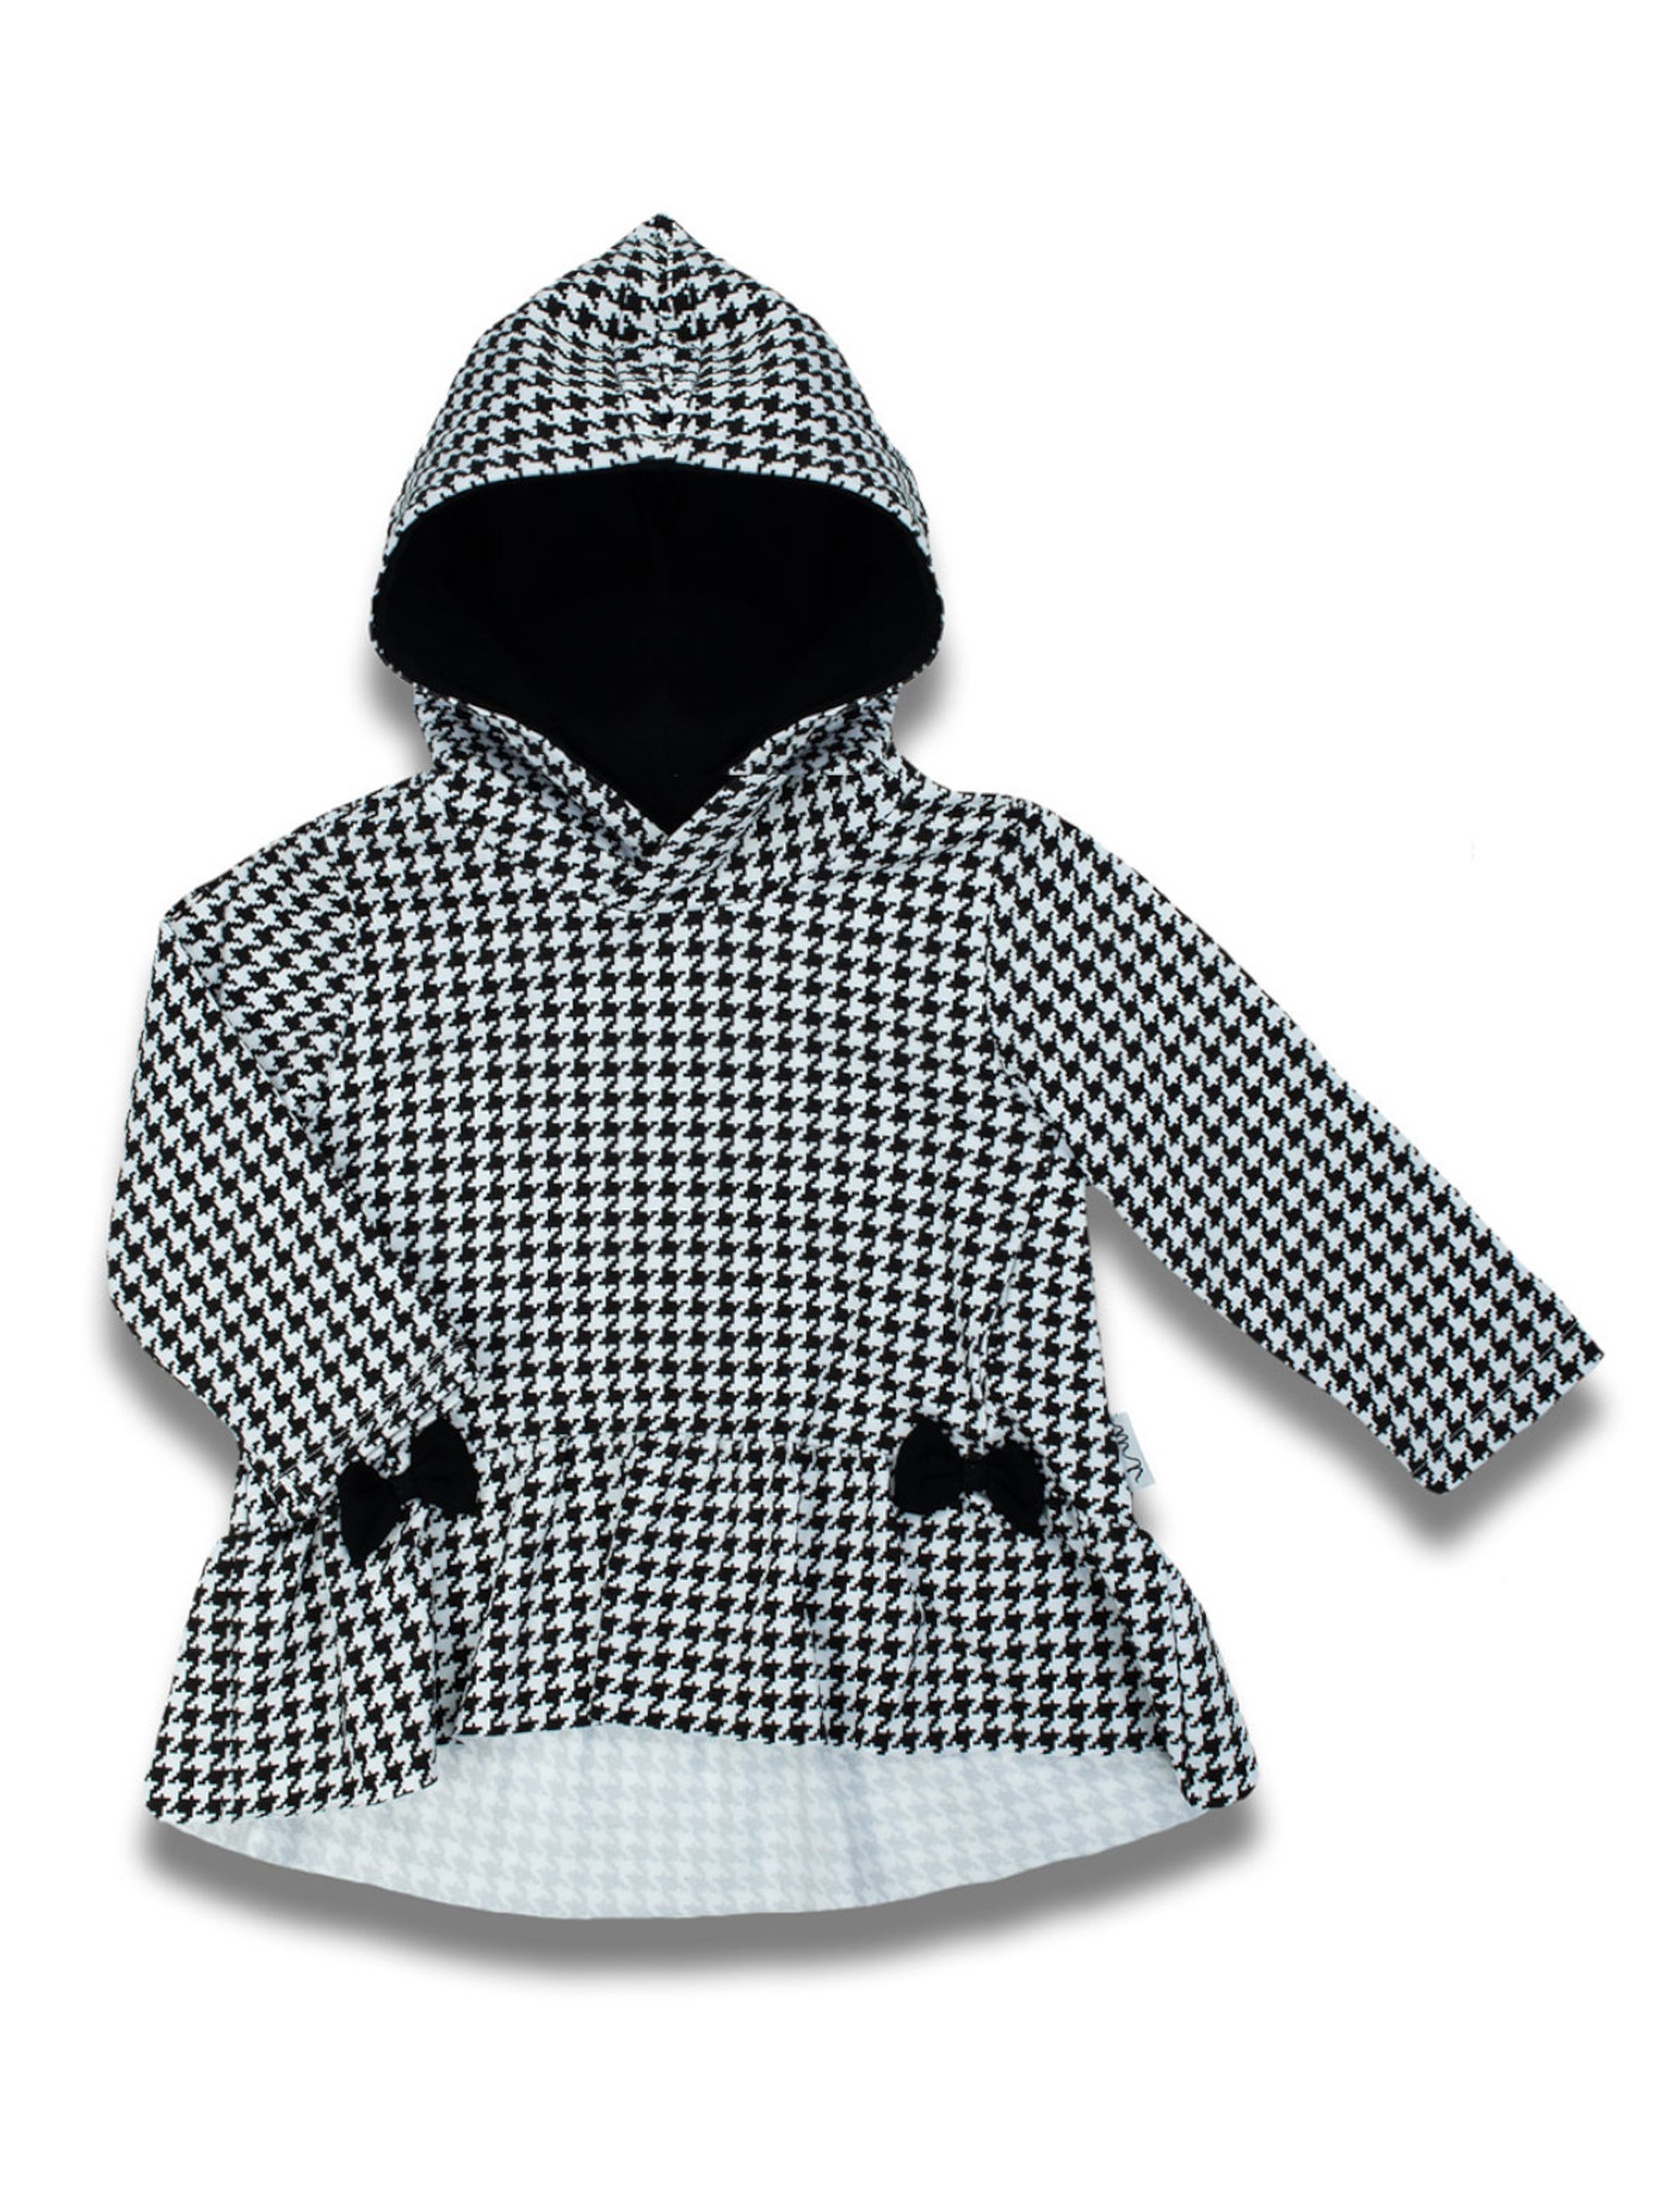 Bluza bawełniana z kapturem czarno-biała w pepitkę dla dziewczynki